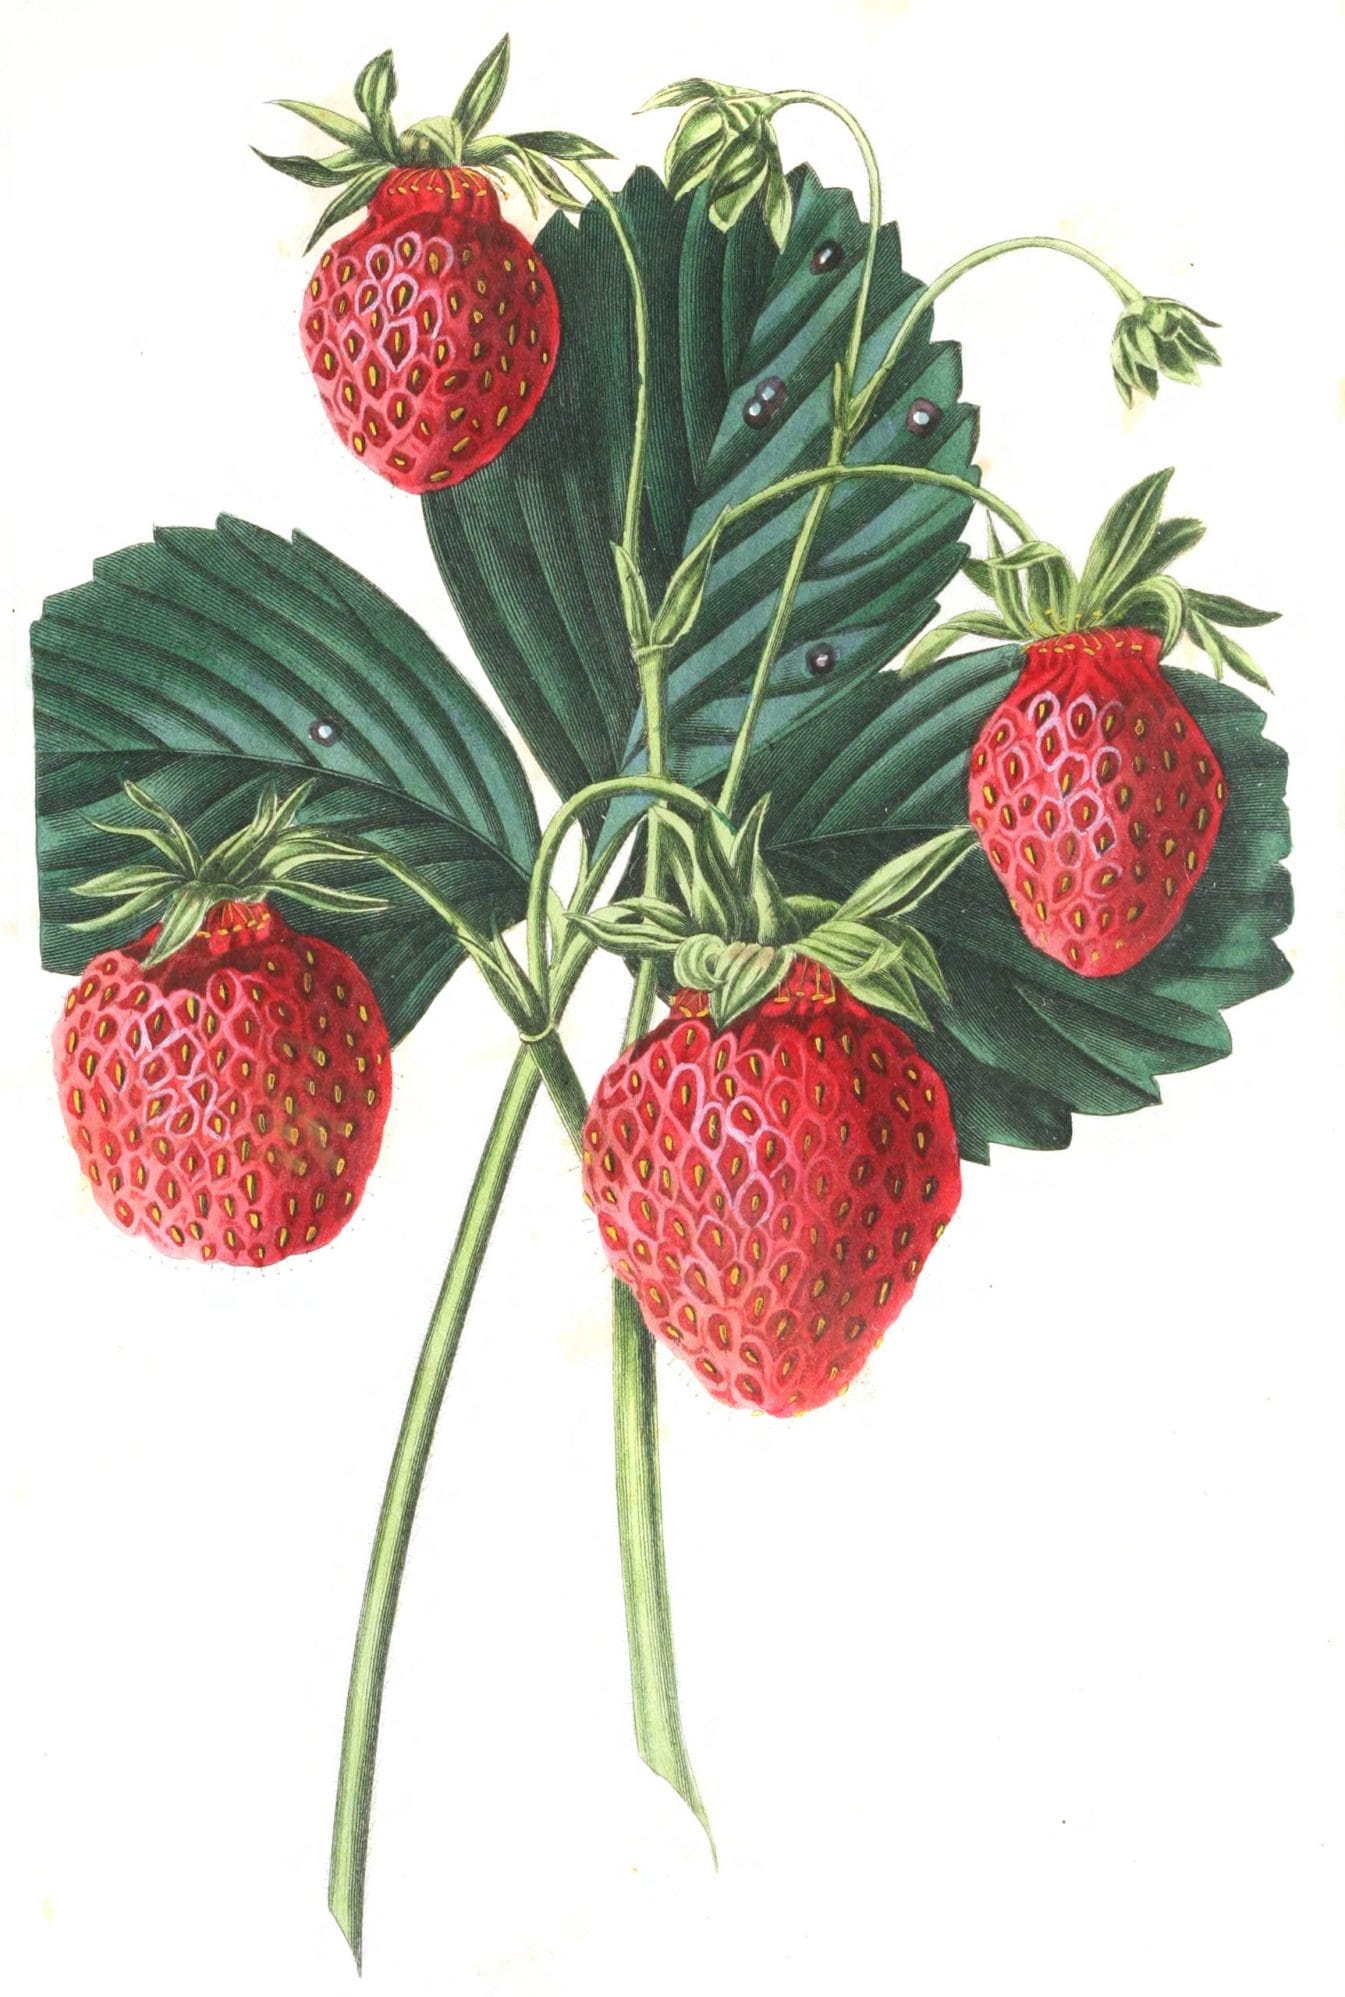 strawberries 4